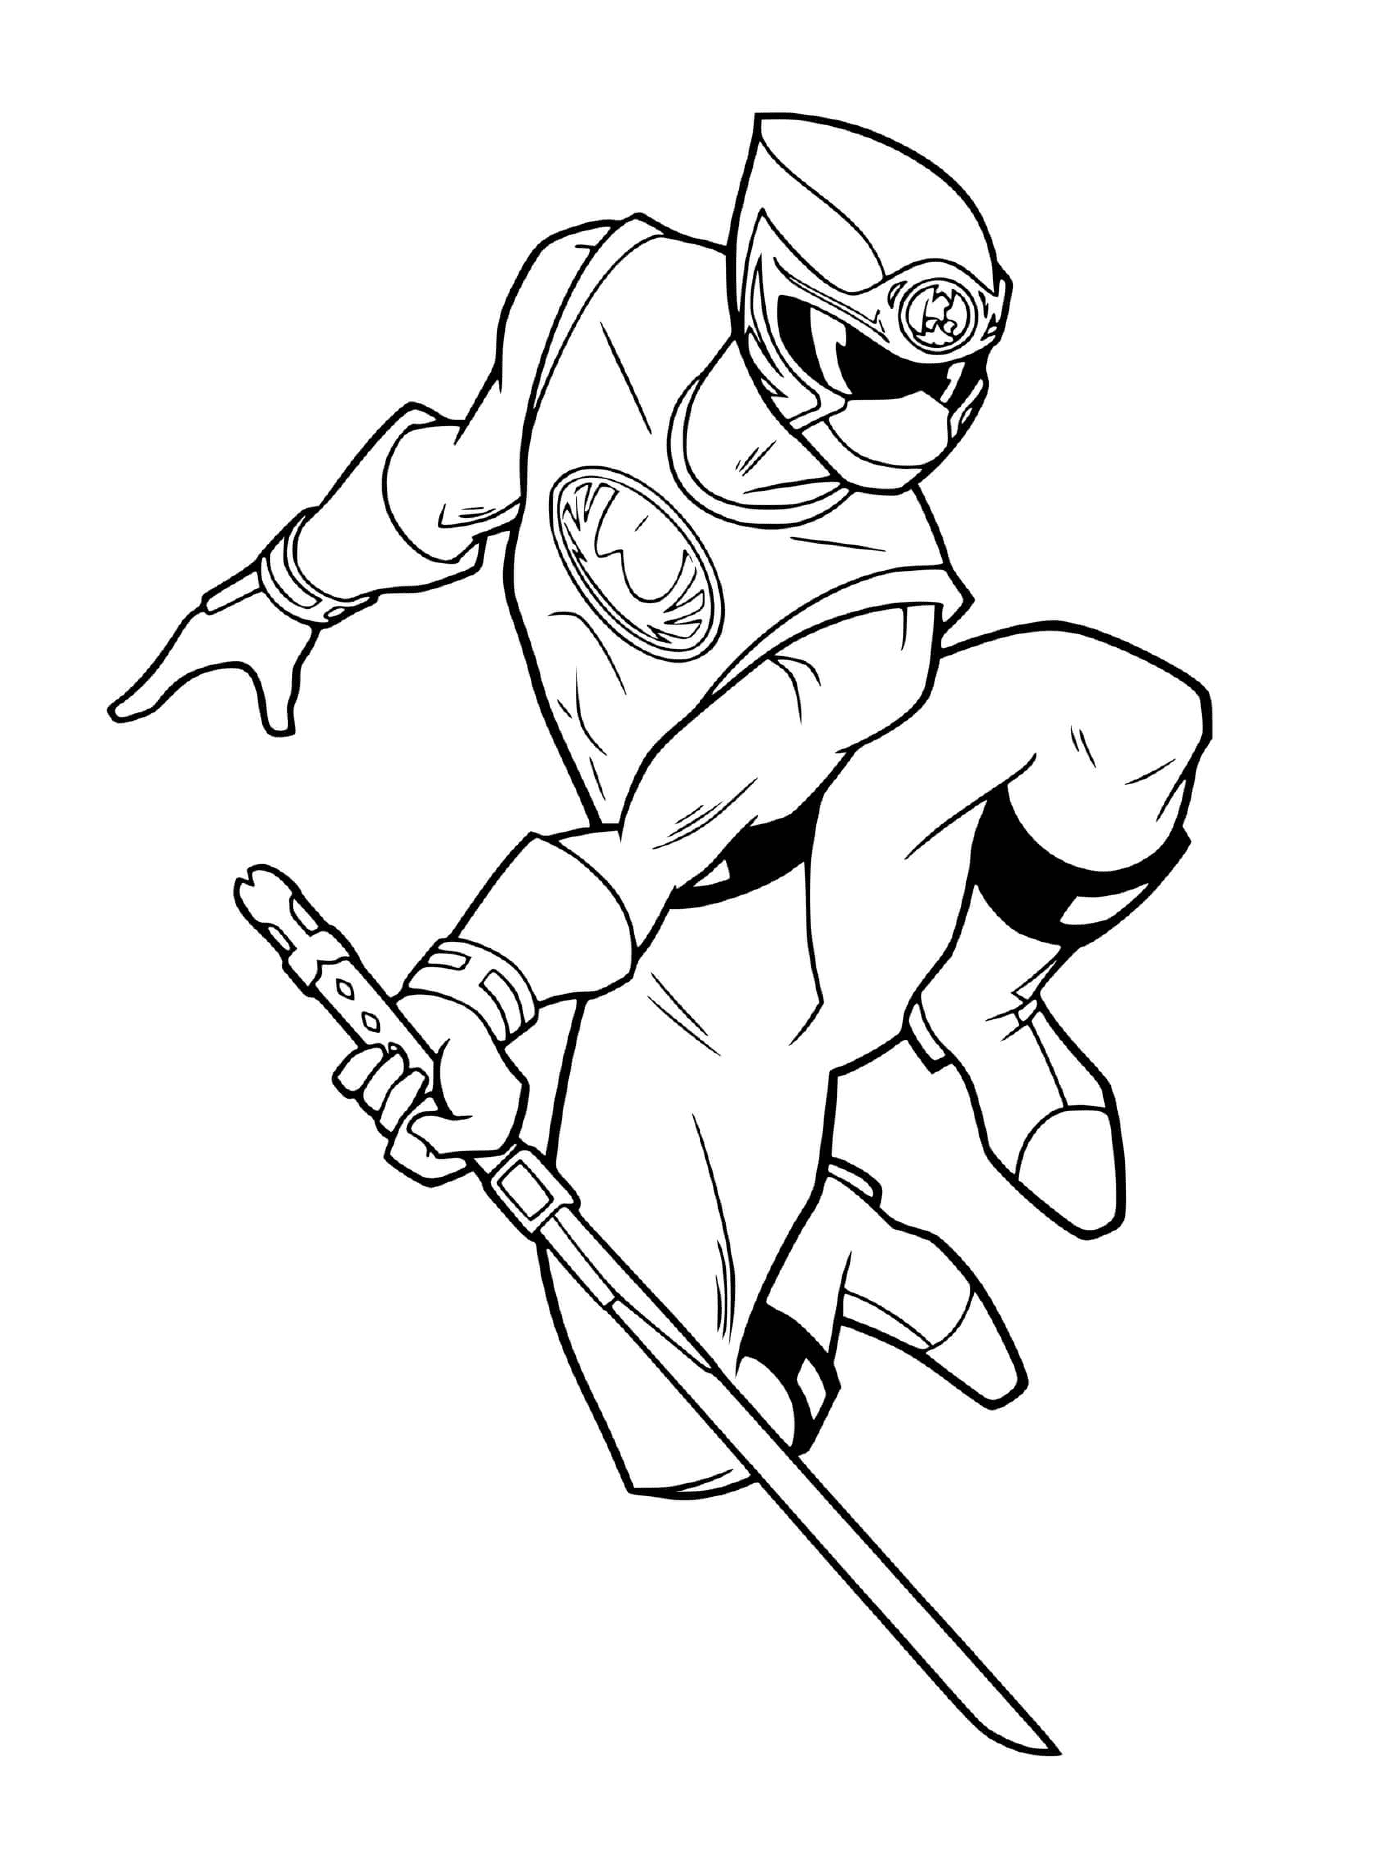   Power Ranger ninja 